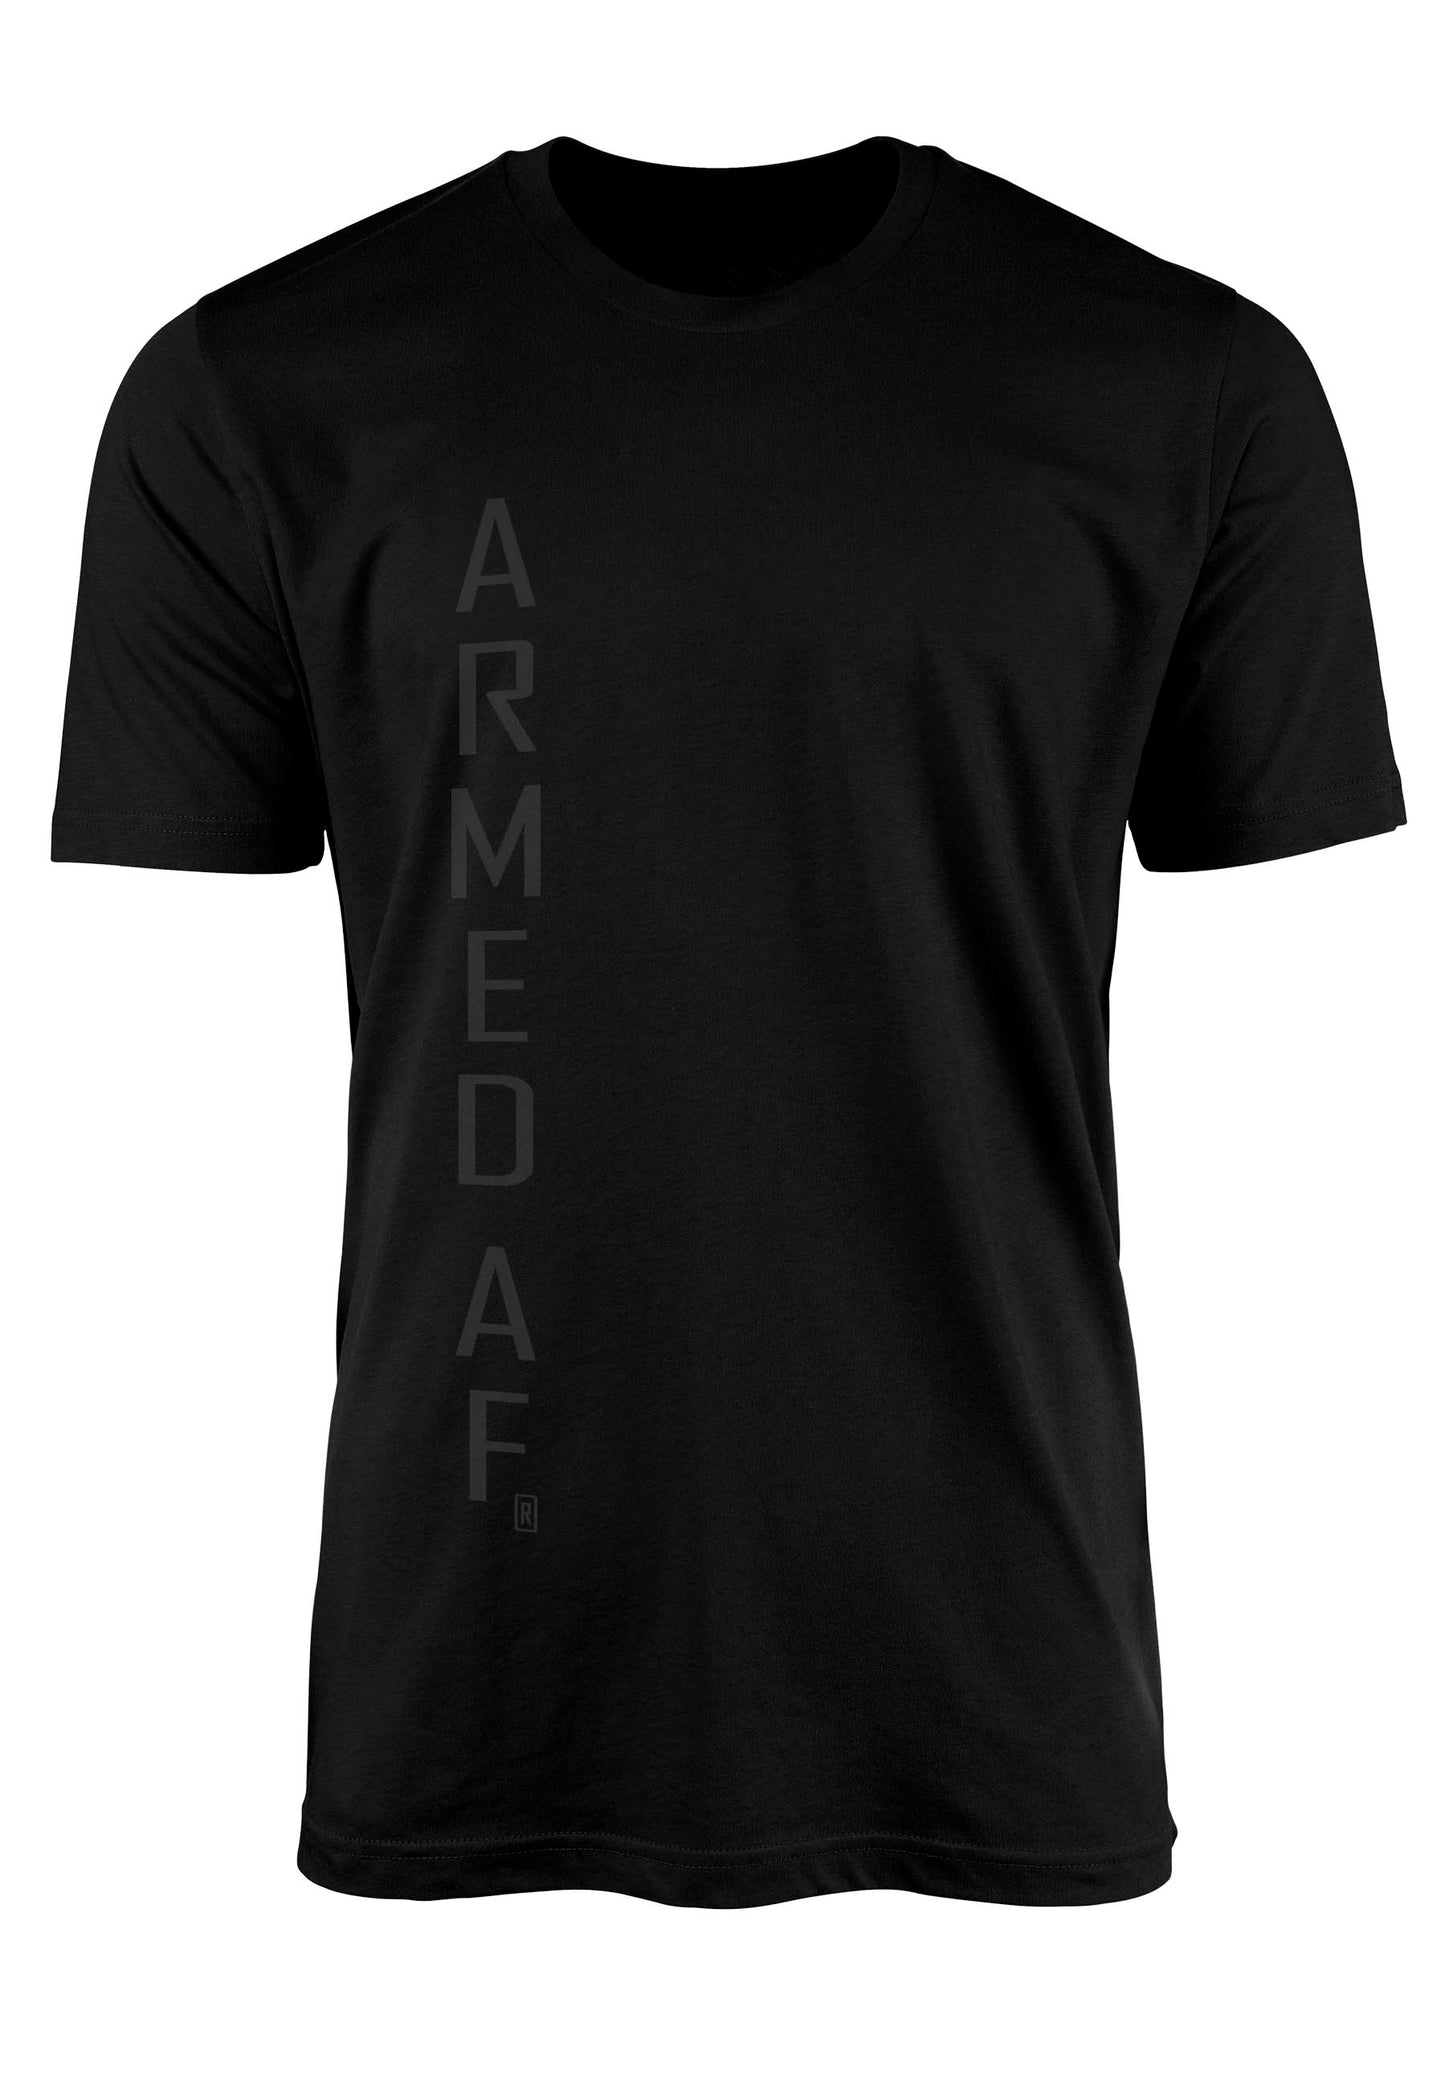 Armed AF tshirt front print